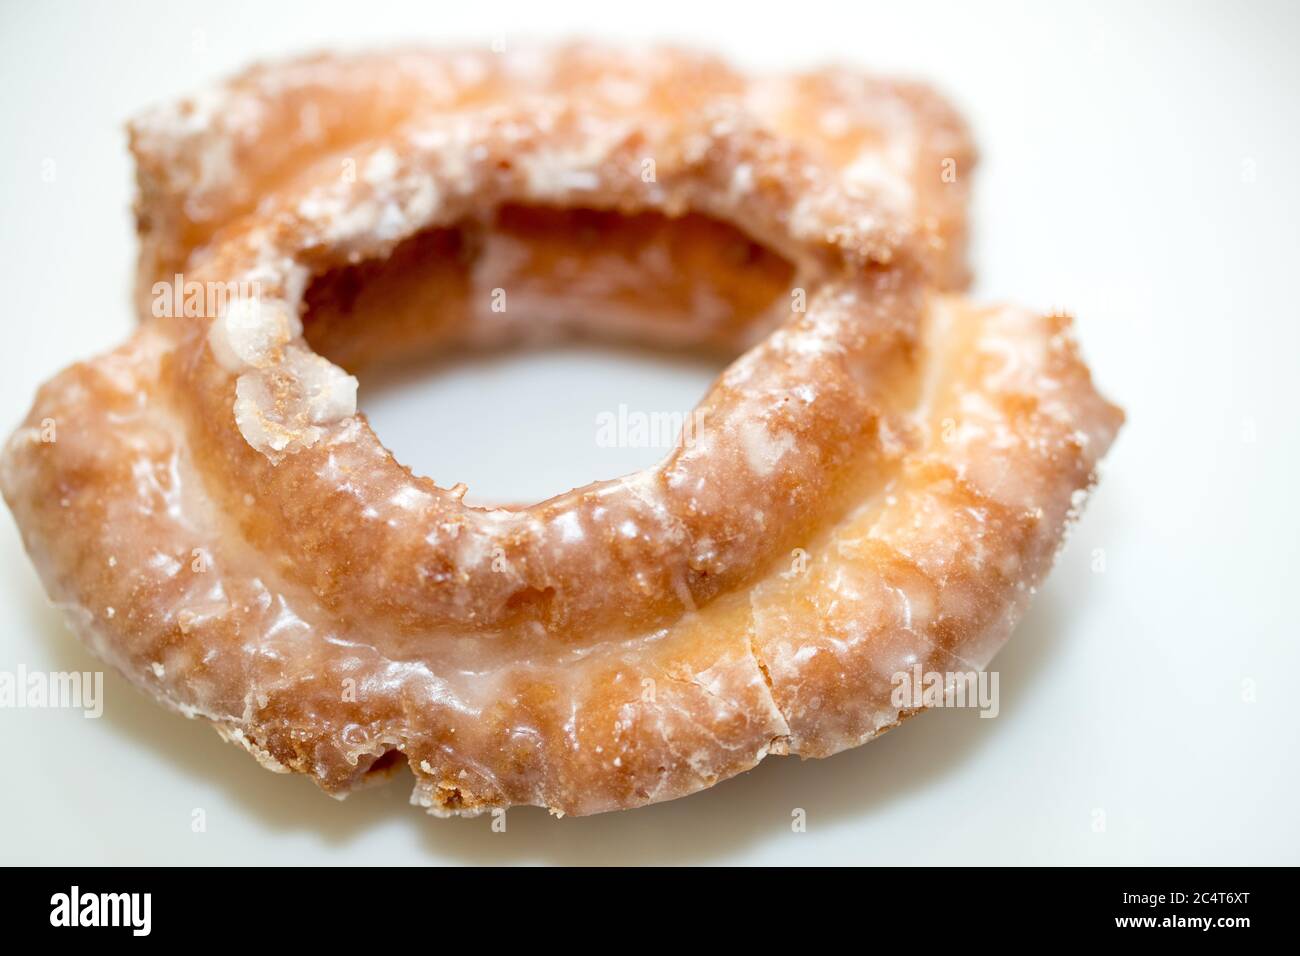 Bunte Donuts auf dem Teller. Draufsicht - Bild Stockfoto